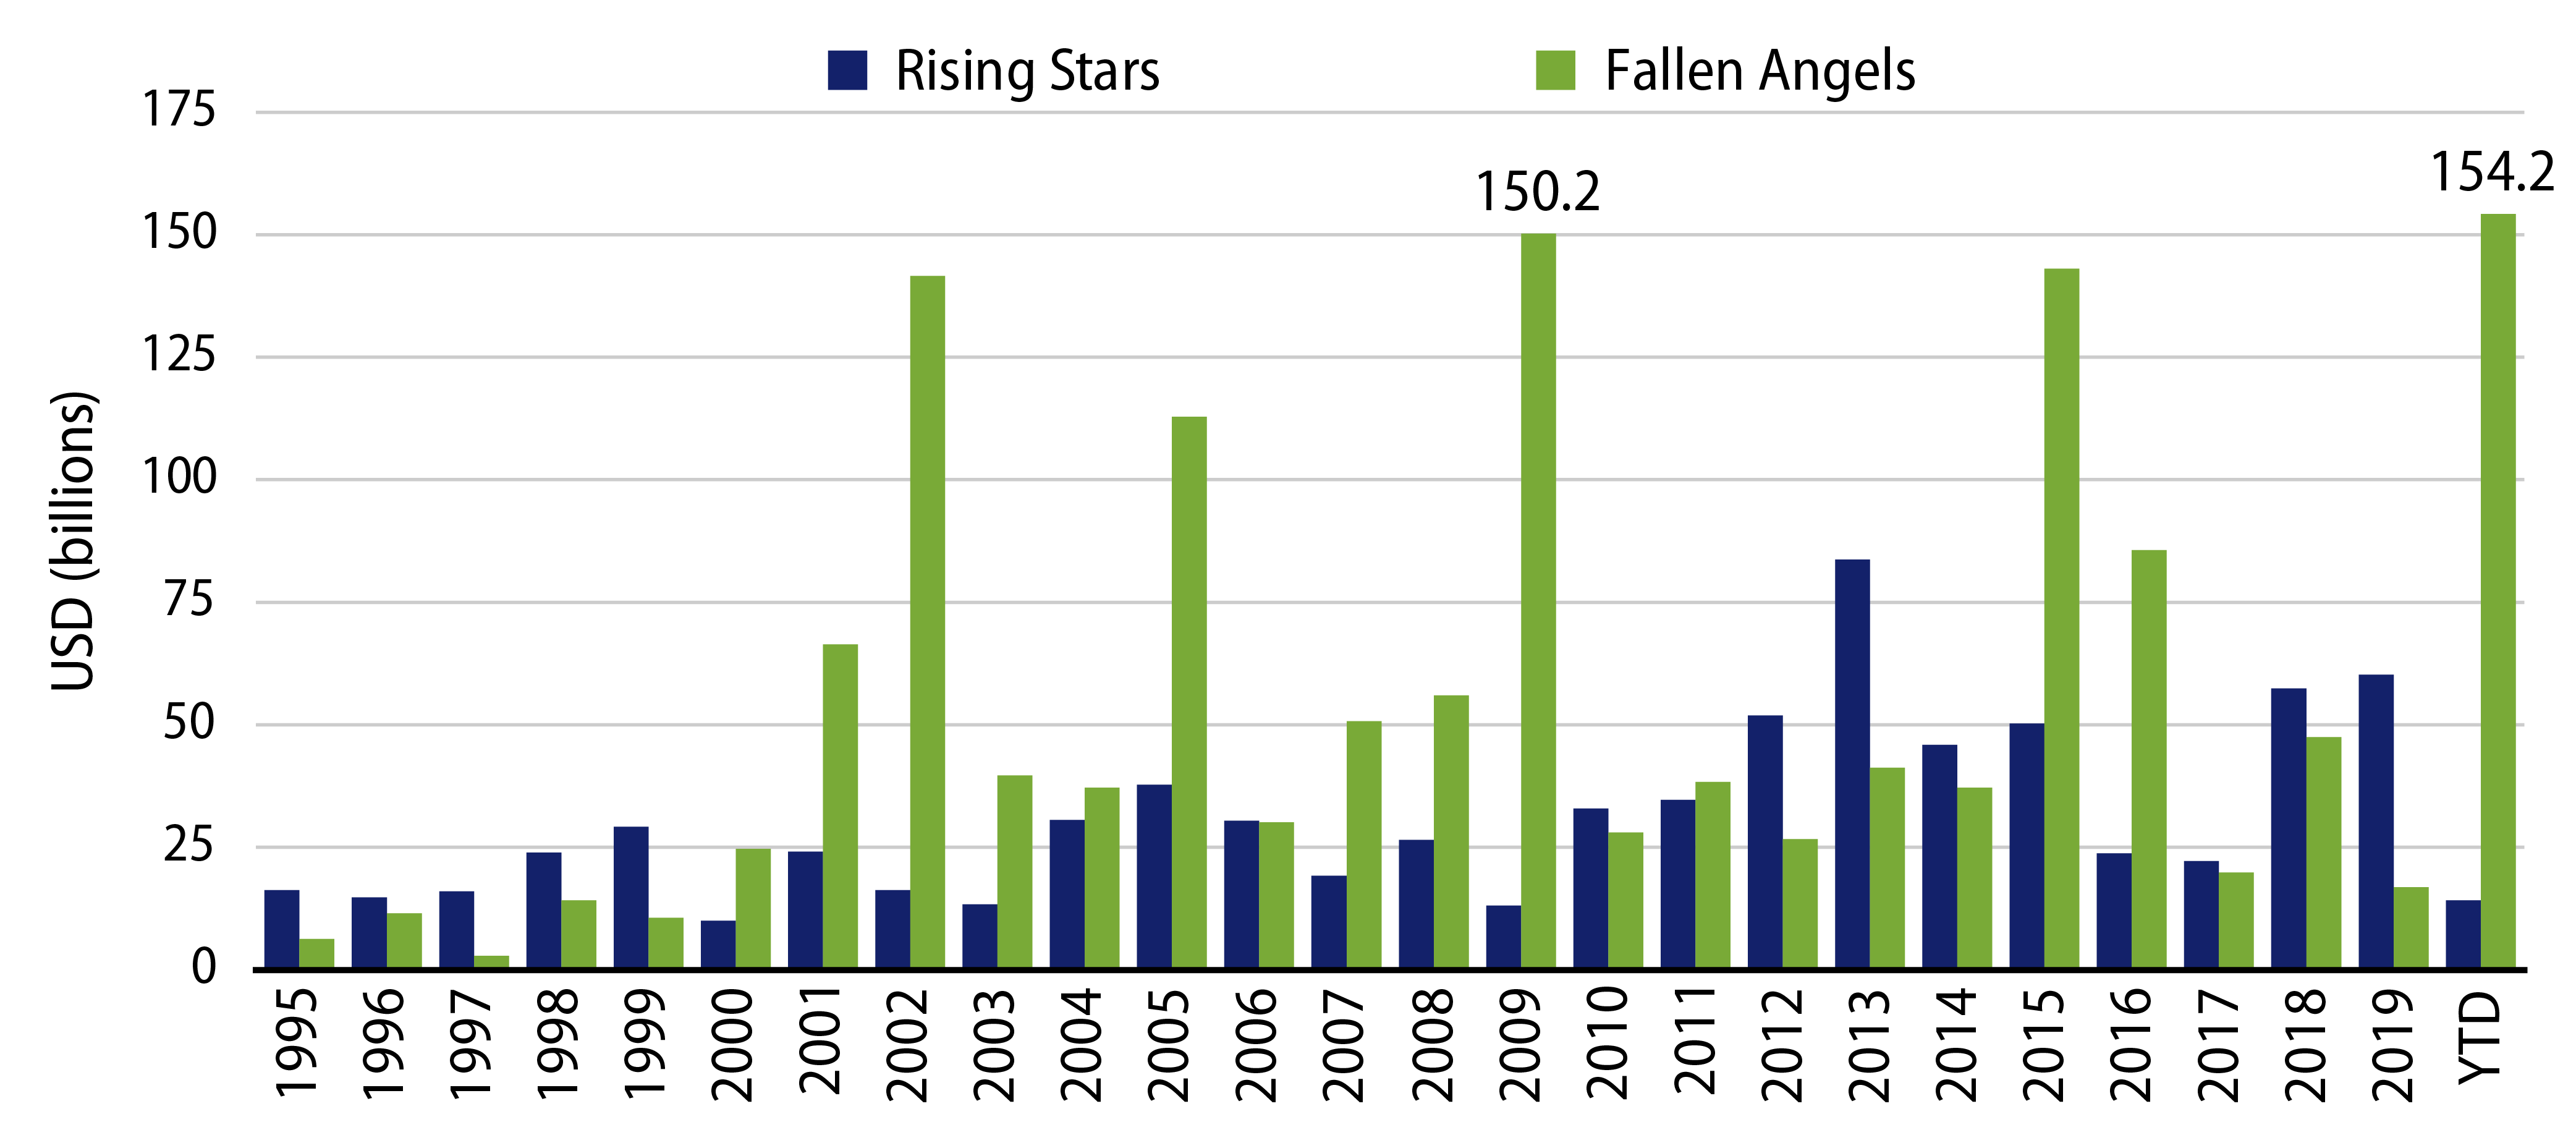 Explore Fallen Angels vs. Rising Stars.